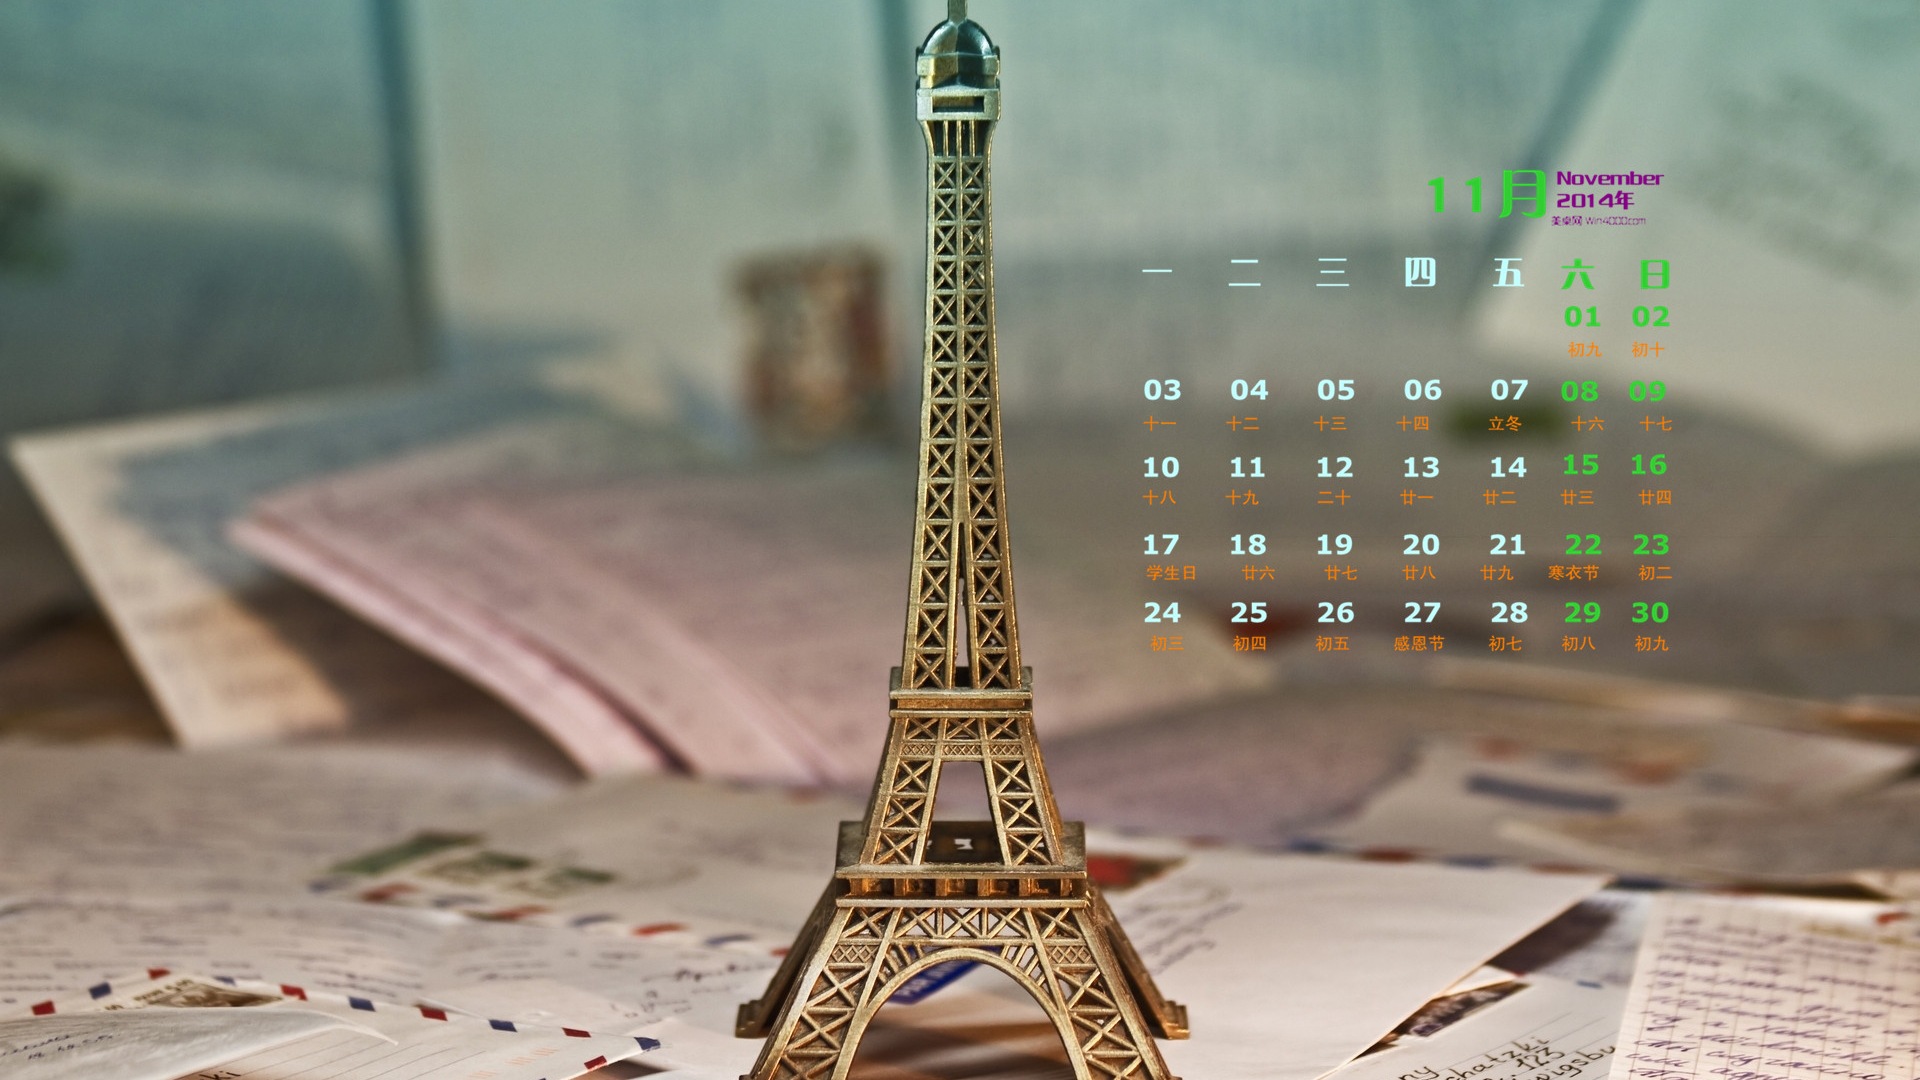 Ноябрь 2014 Календарь обои (2) #2 - 1920x1080